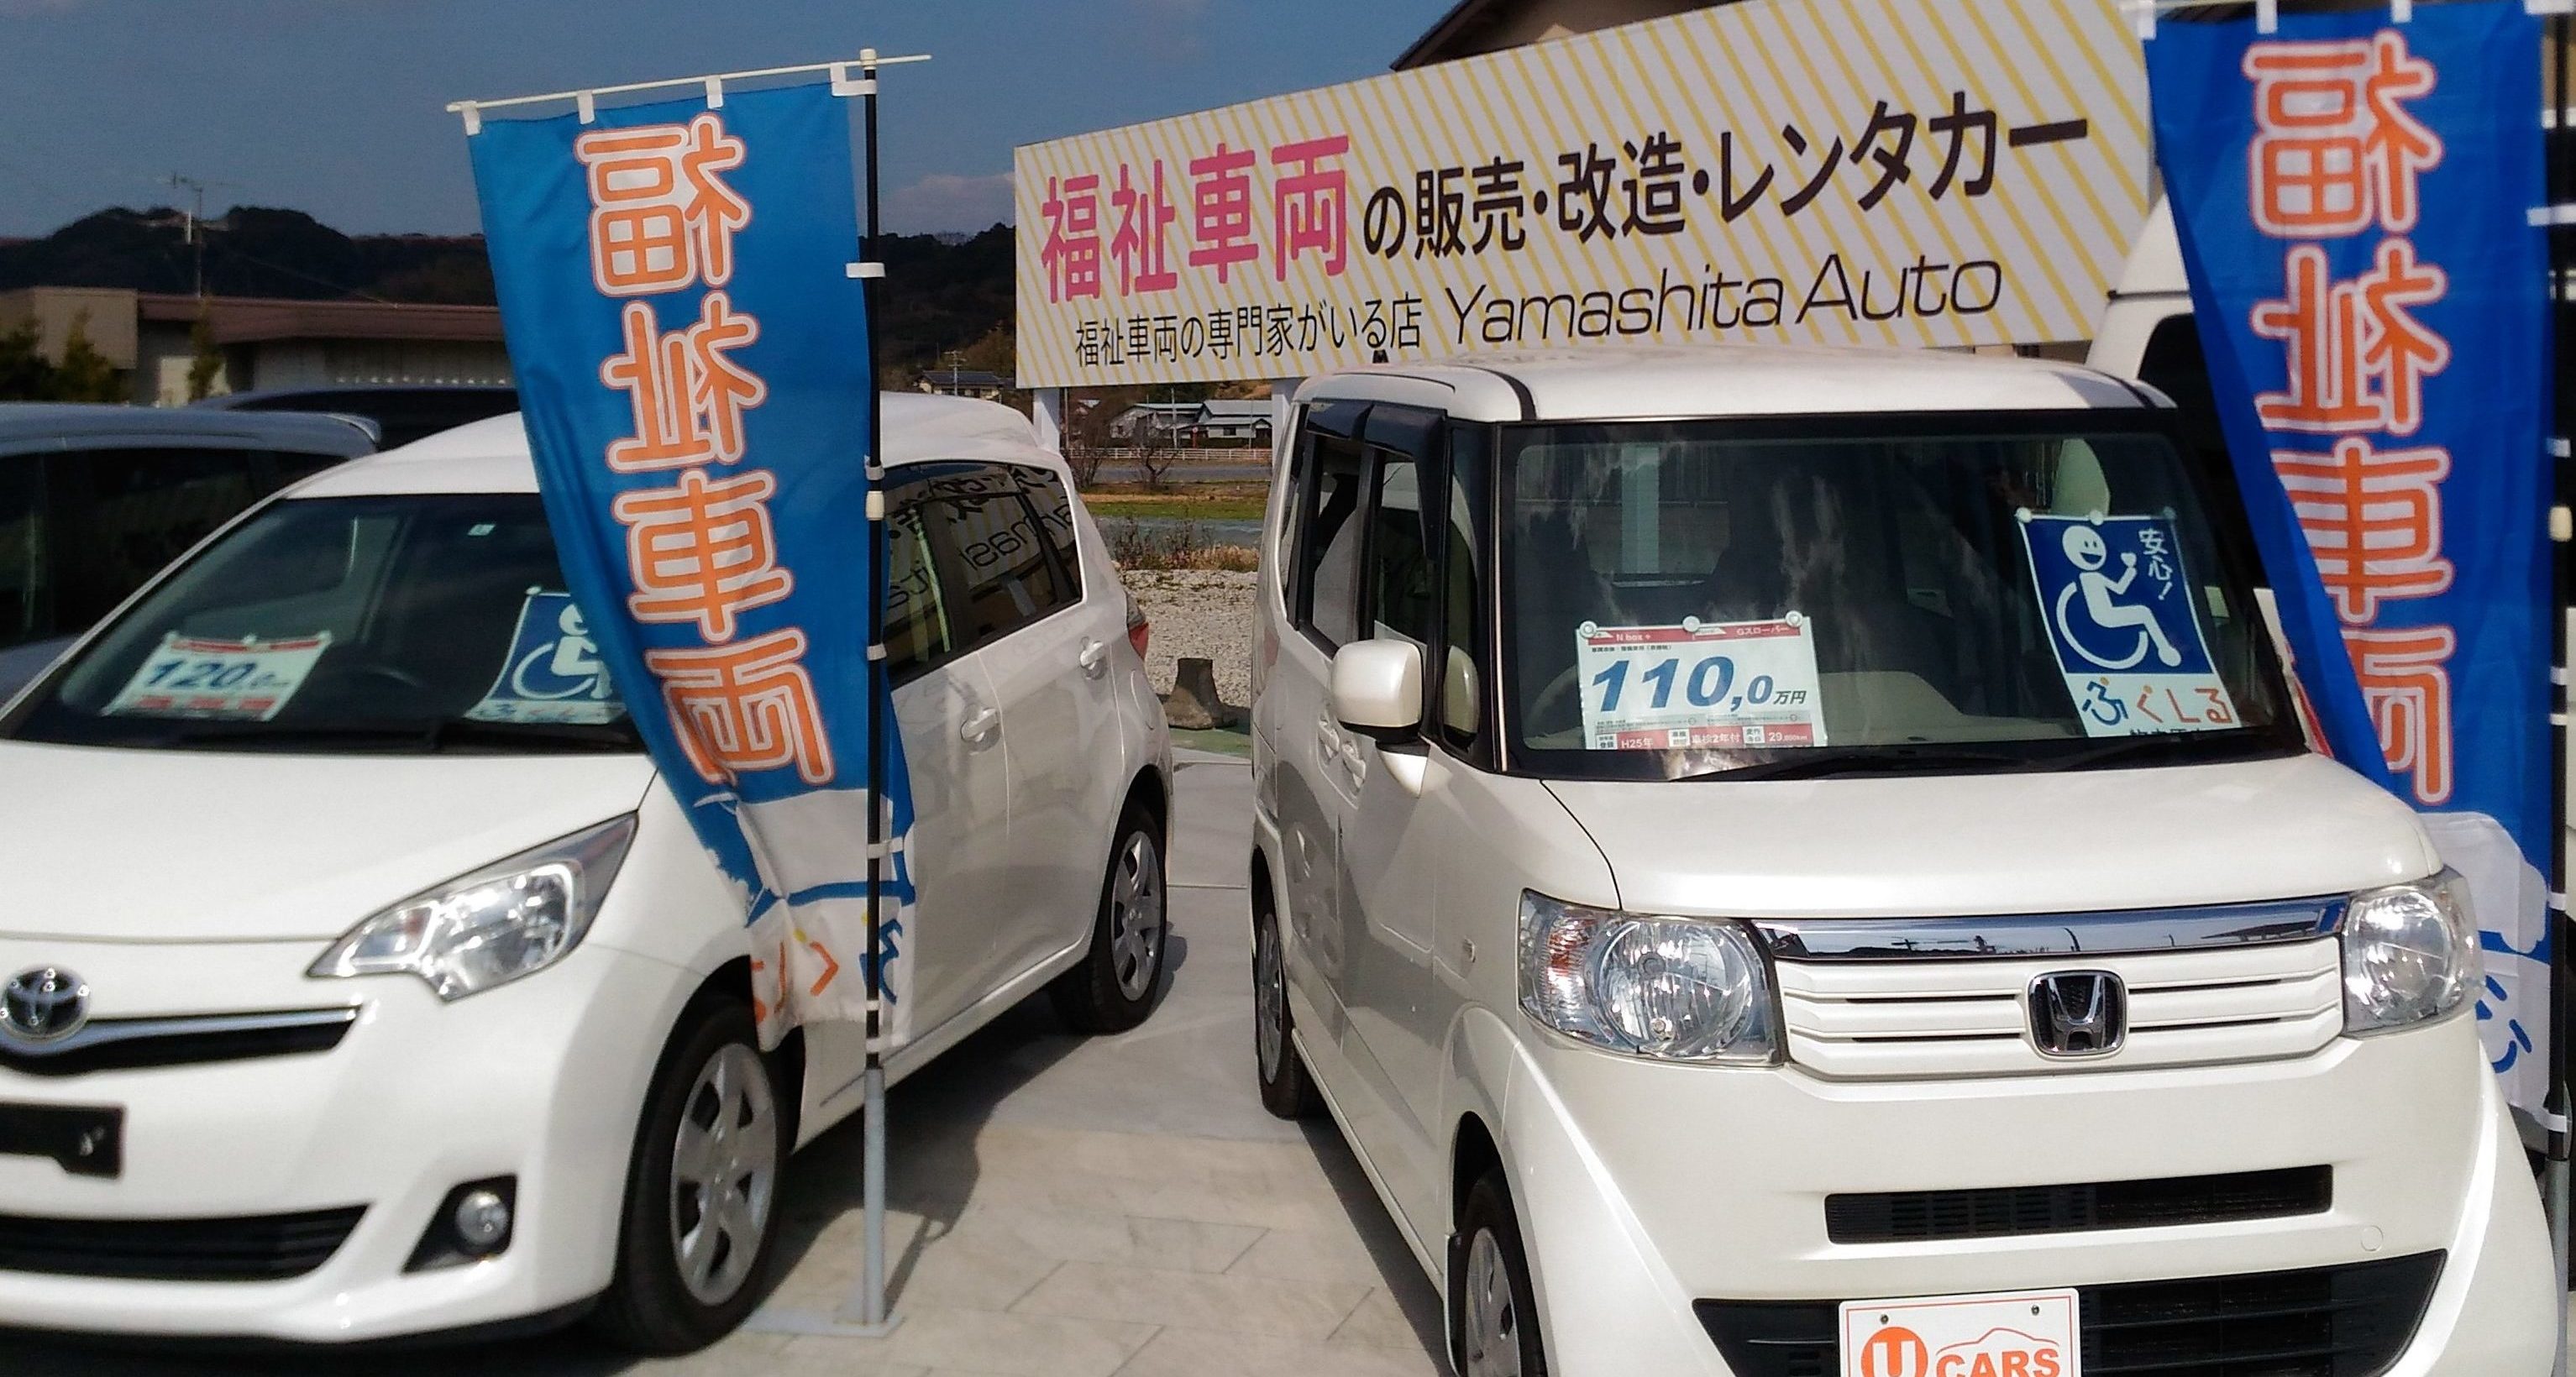 福祉車両の販売 改造のヤマシタオート 静岡から全国に良質な福祉車両 介護車両をお届け